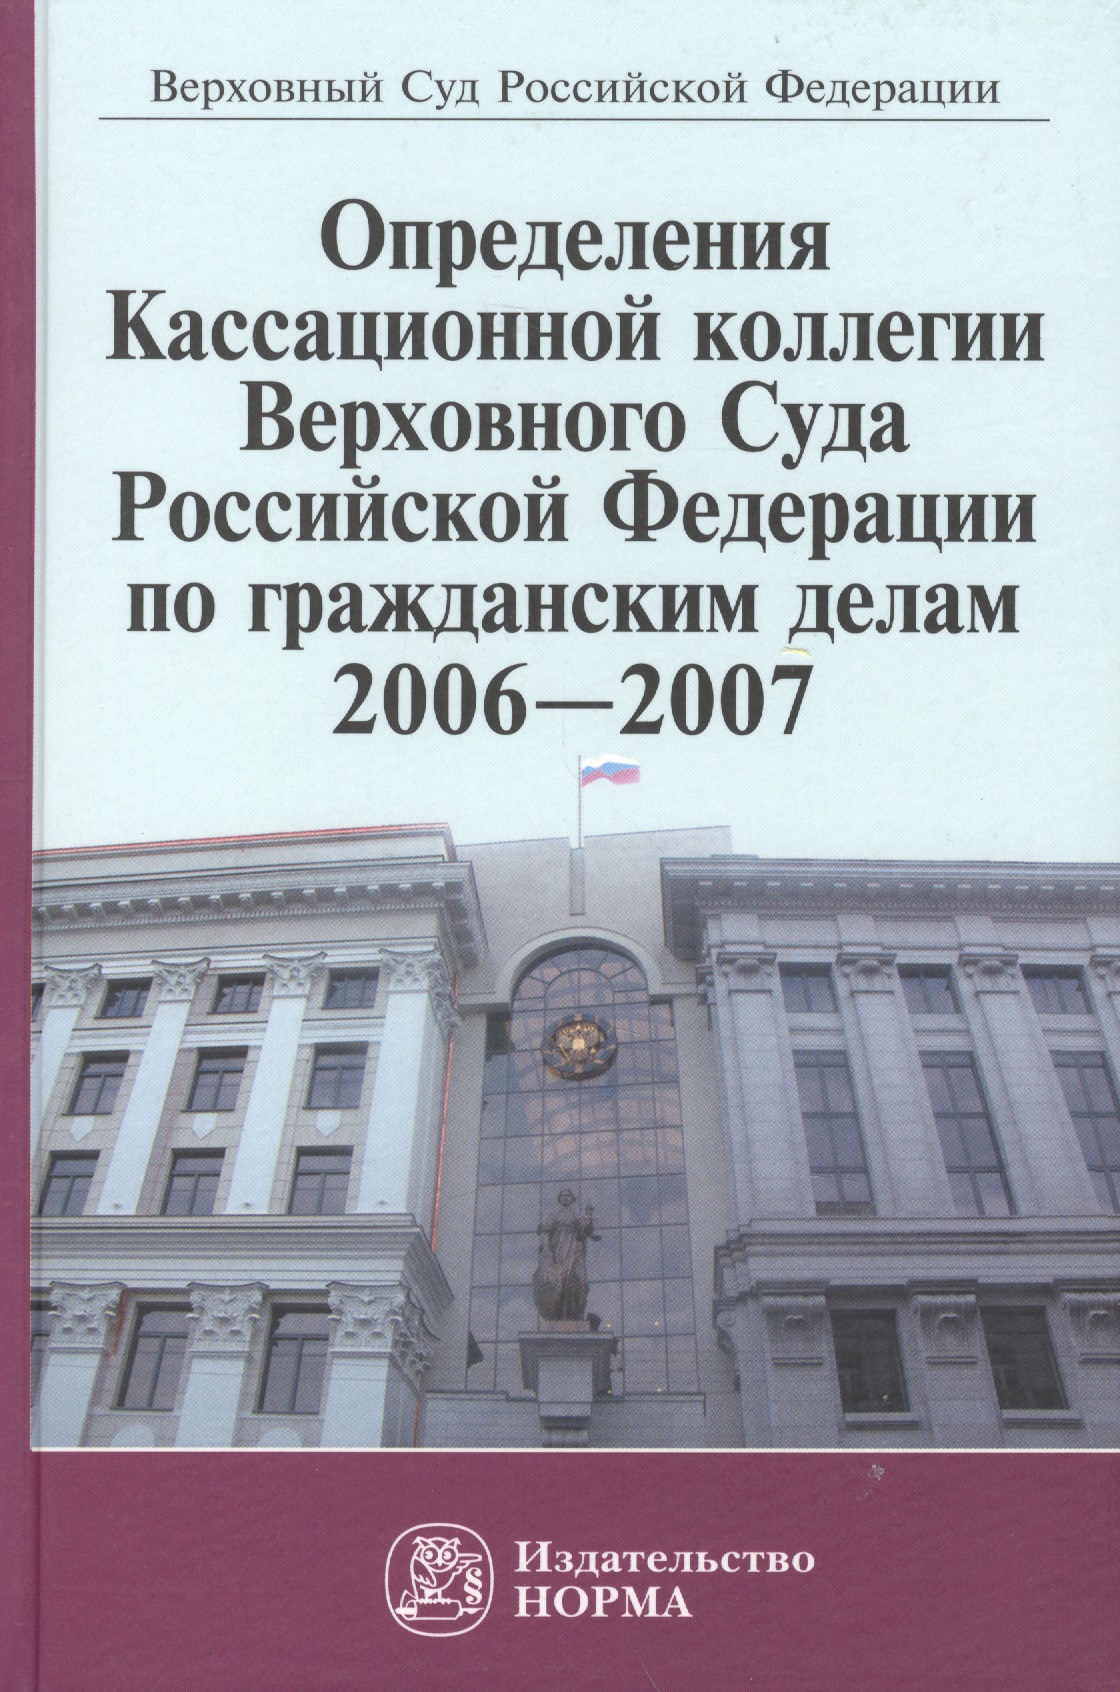           2006-2007